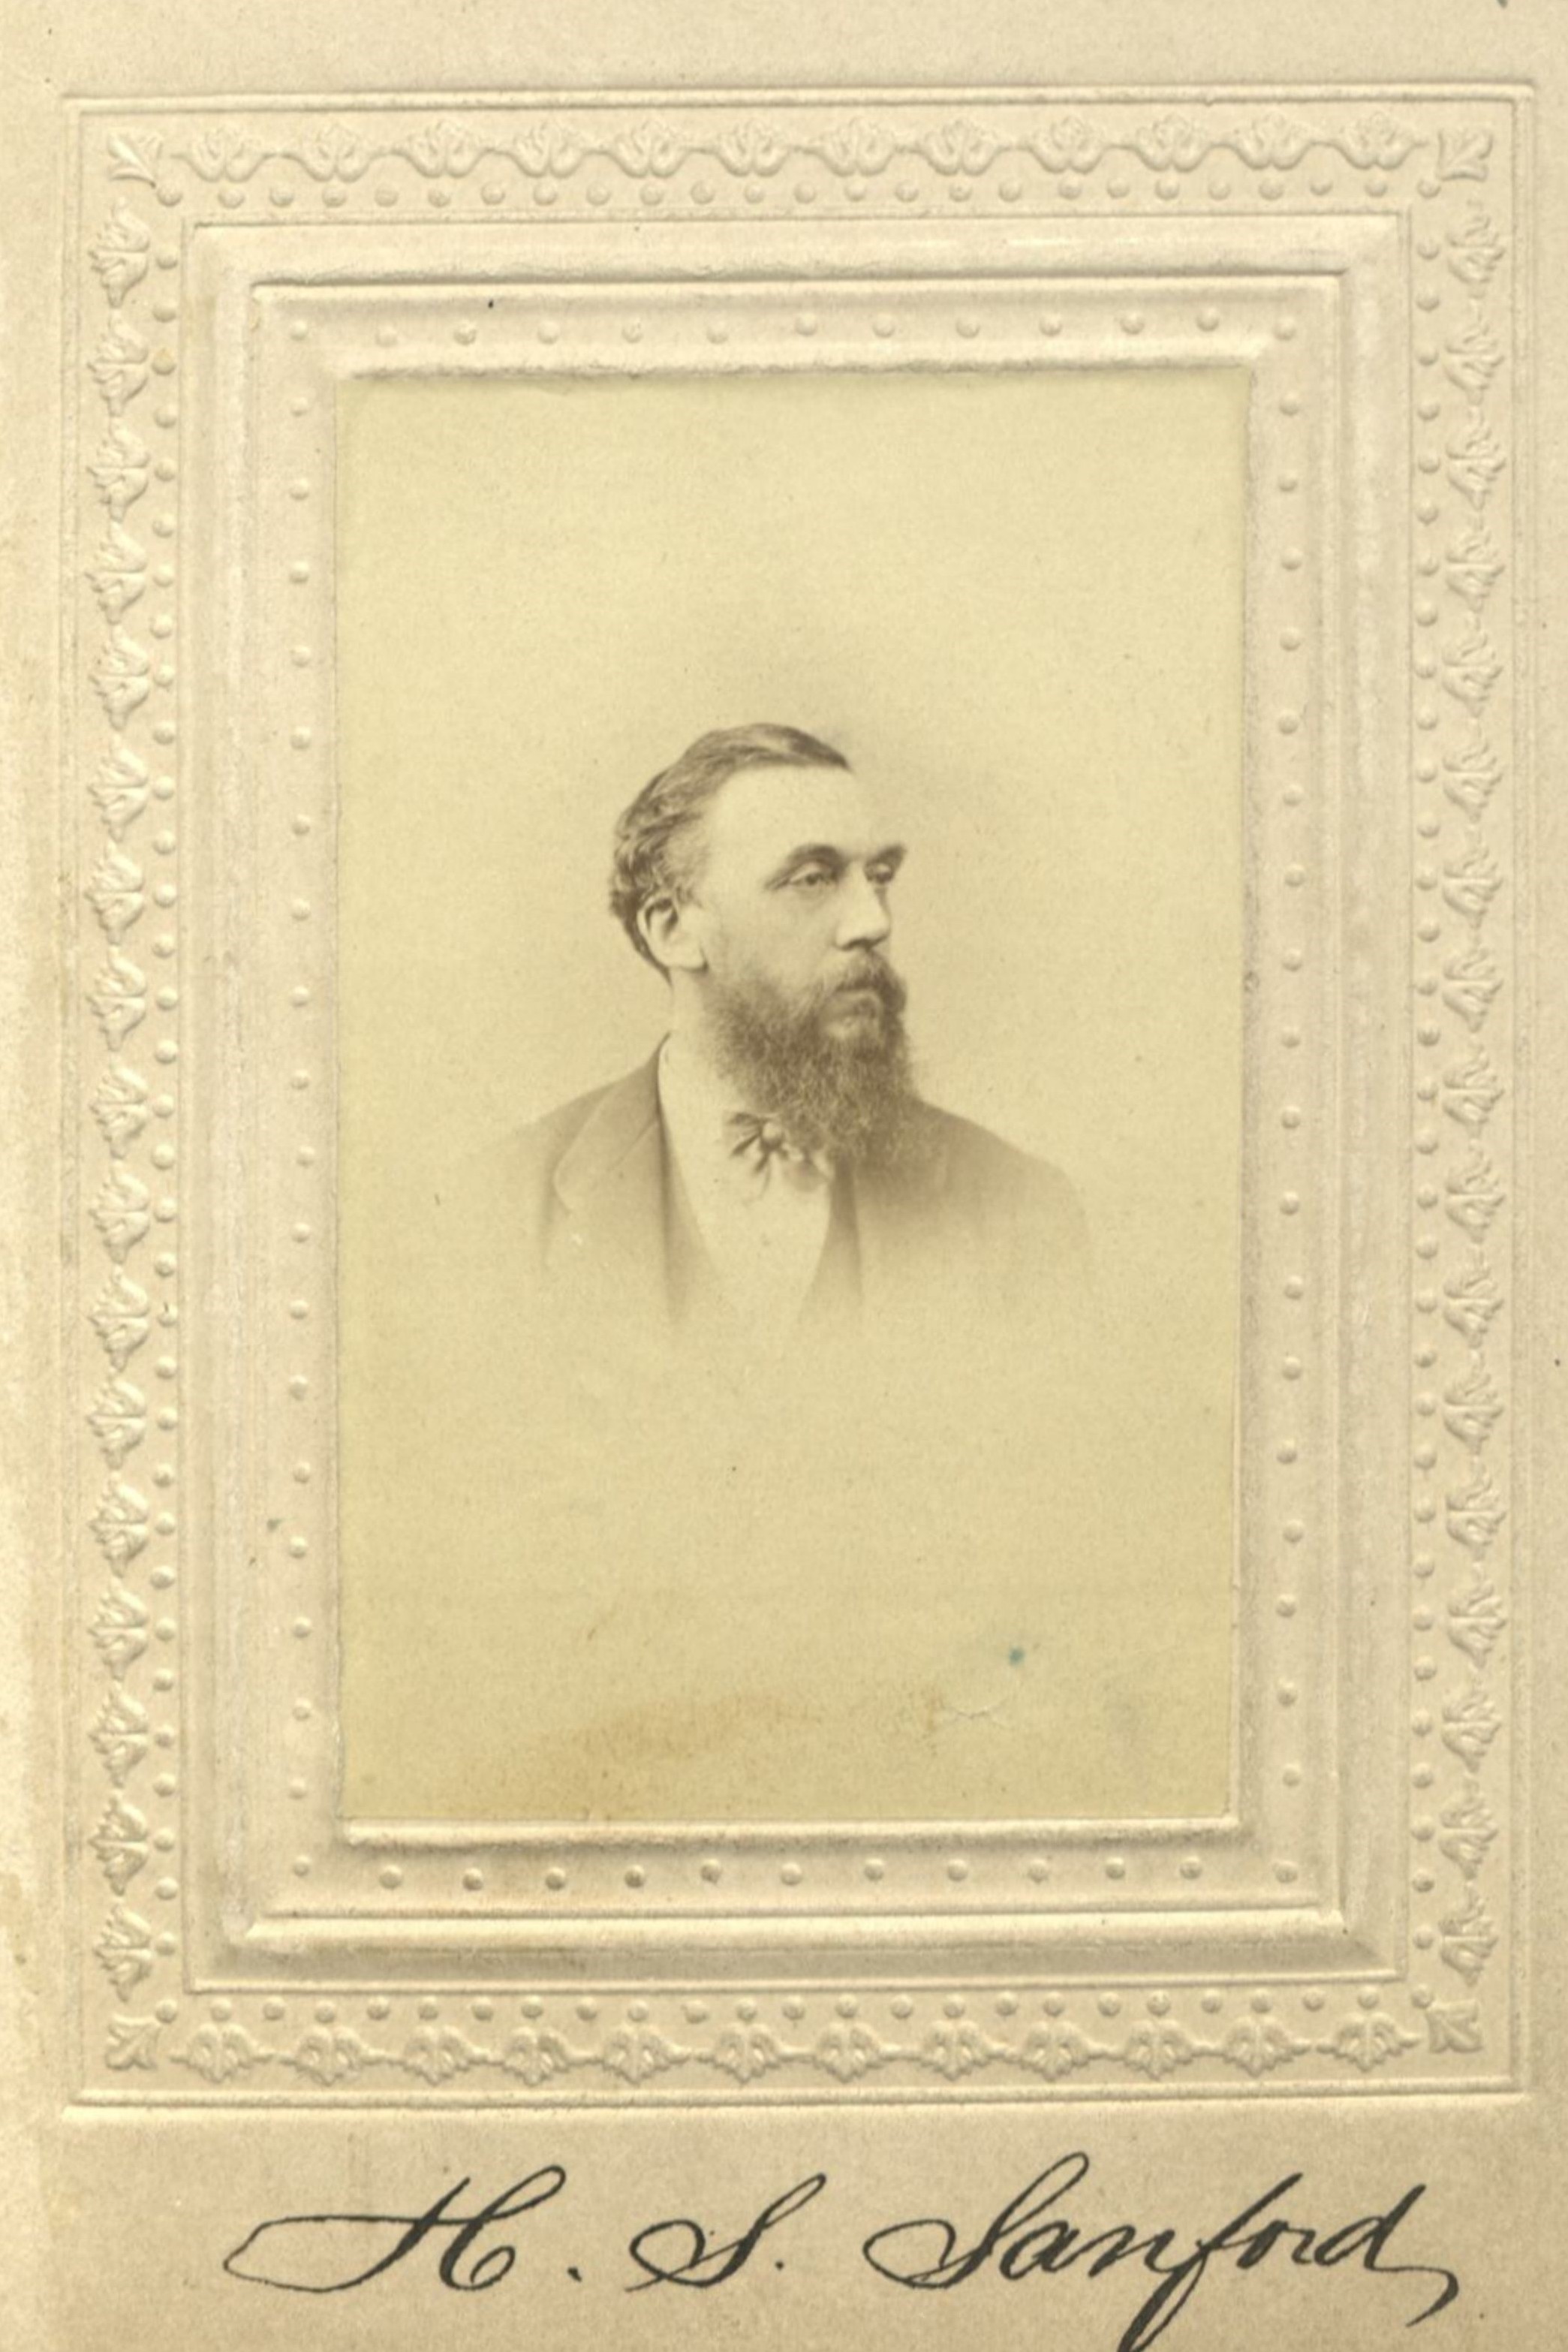 Member portrait of Henry S. Sanford